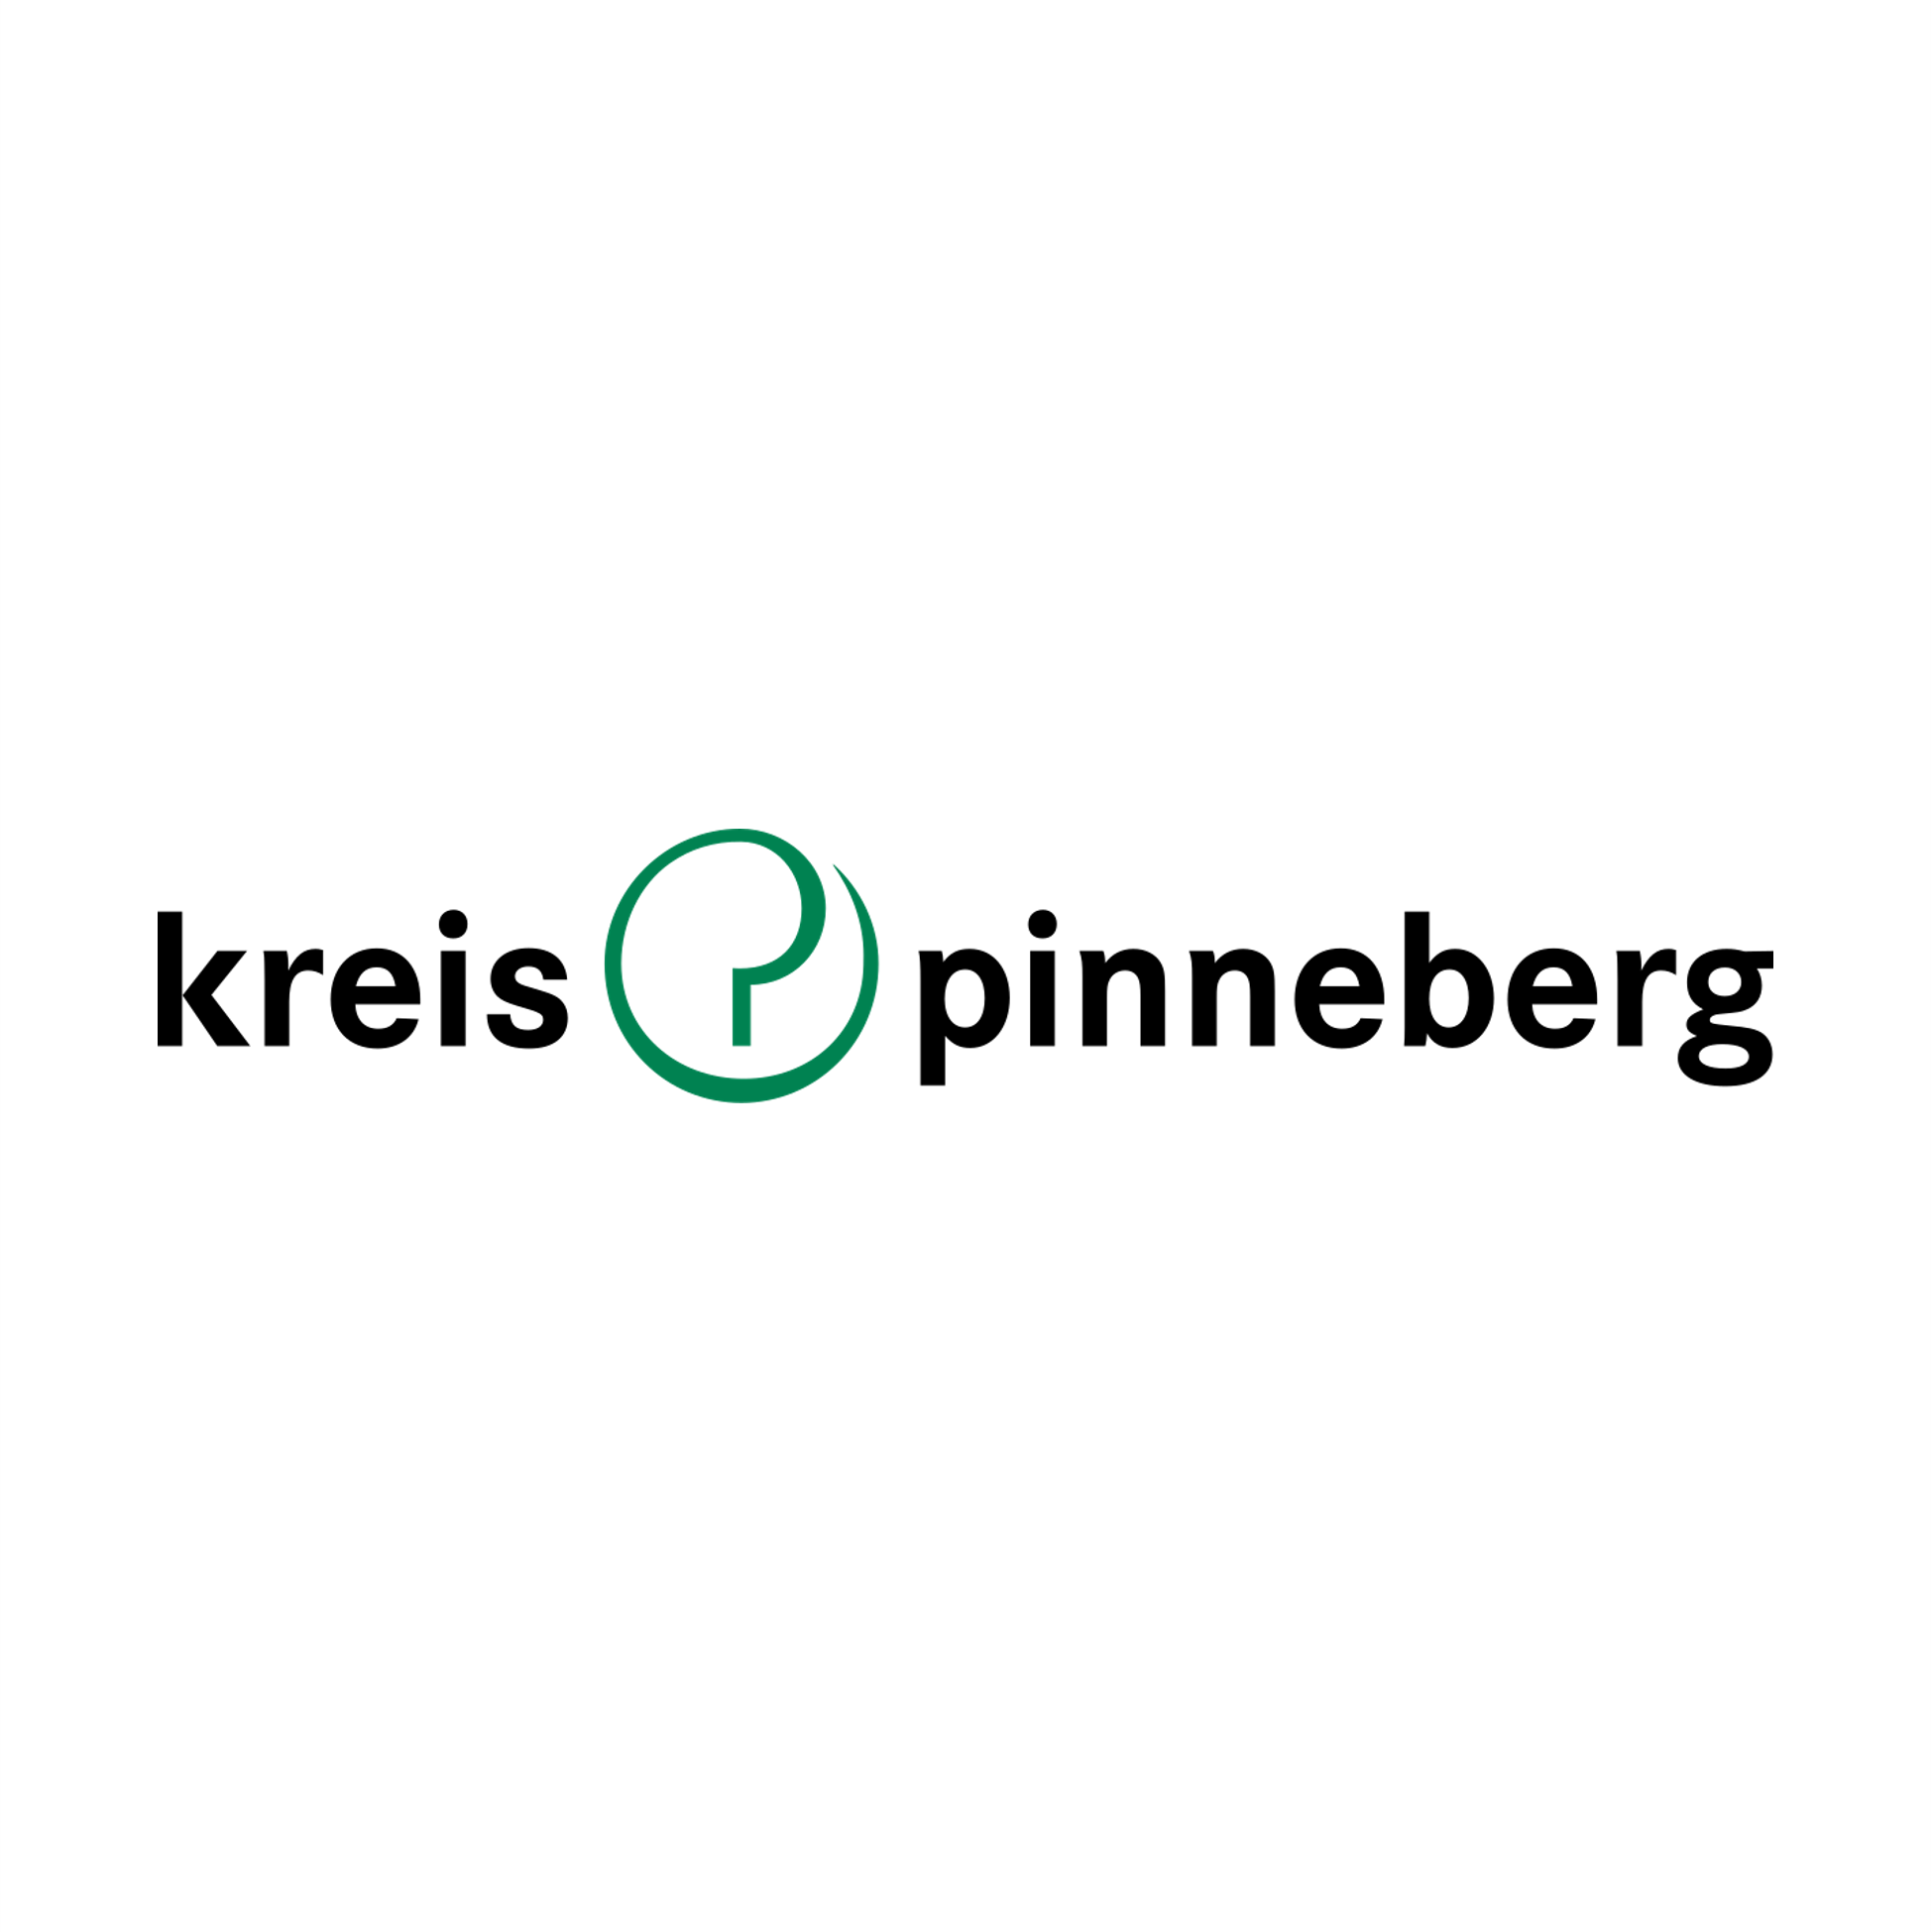 Kreis Pinneberg logo